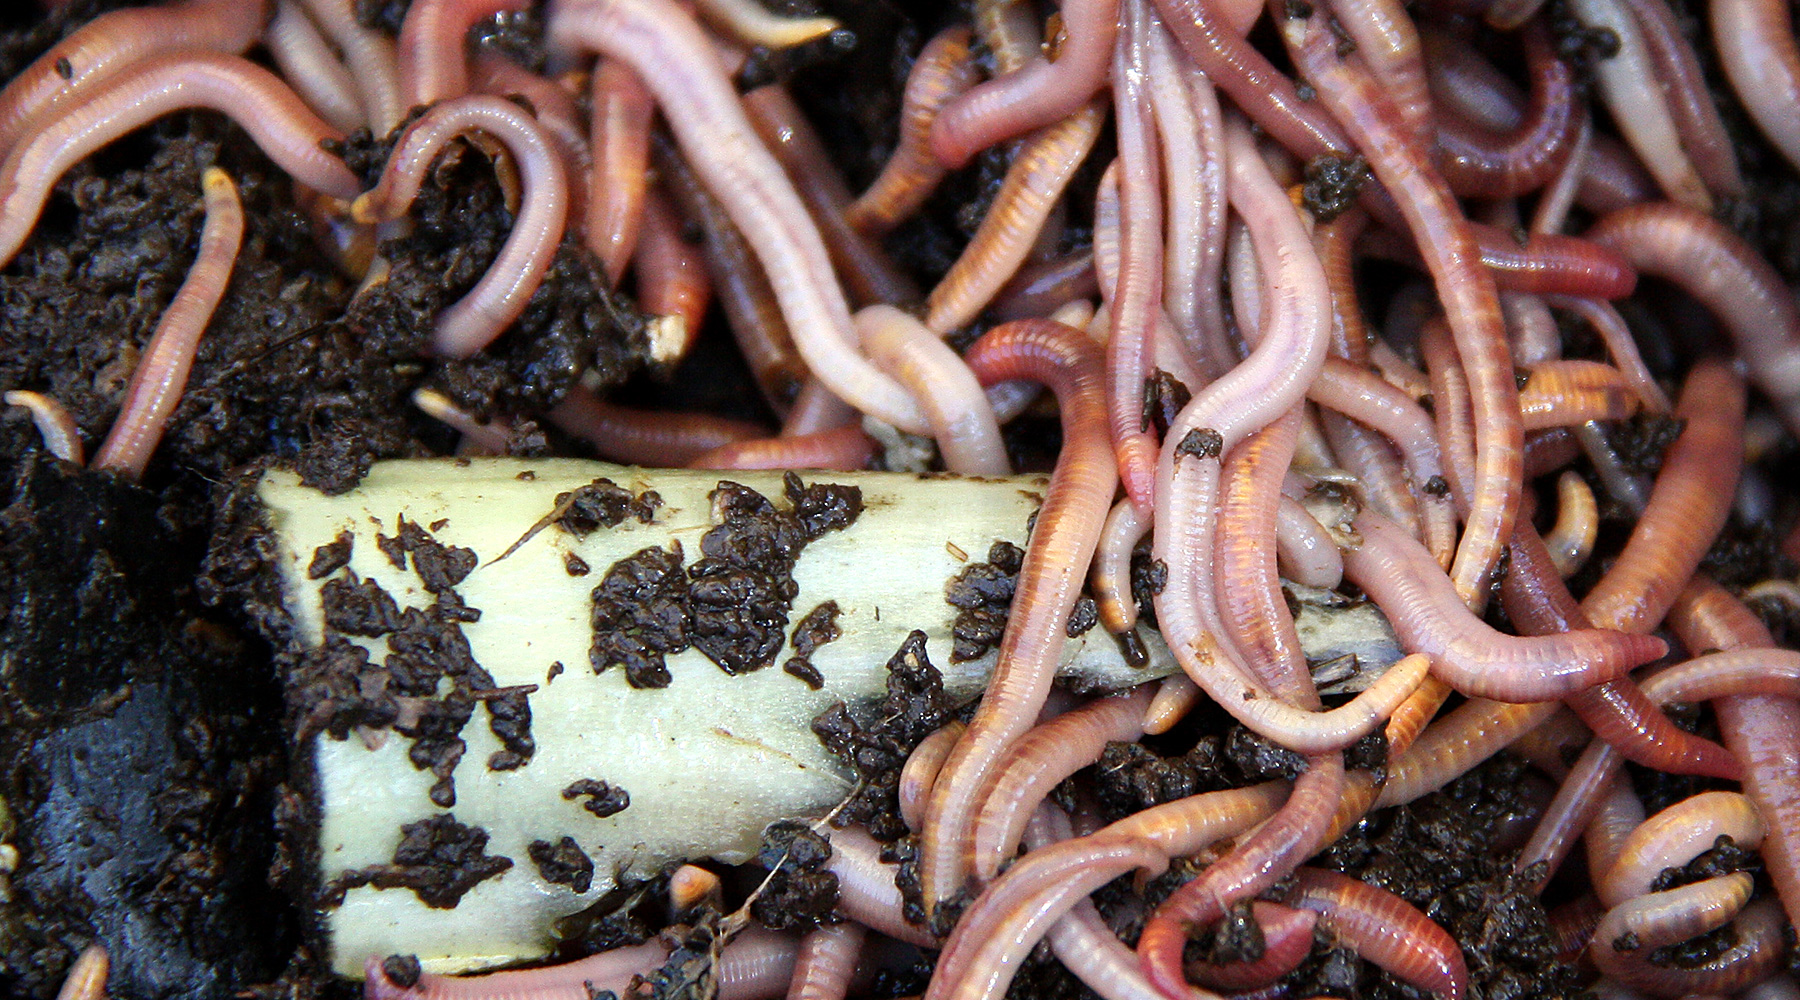 Le vermicomposteur : une boîte à vers pour faire son compost